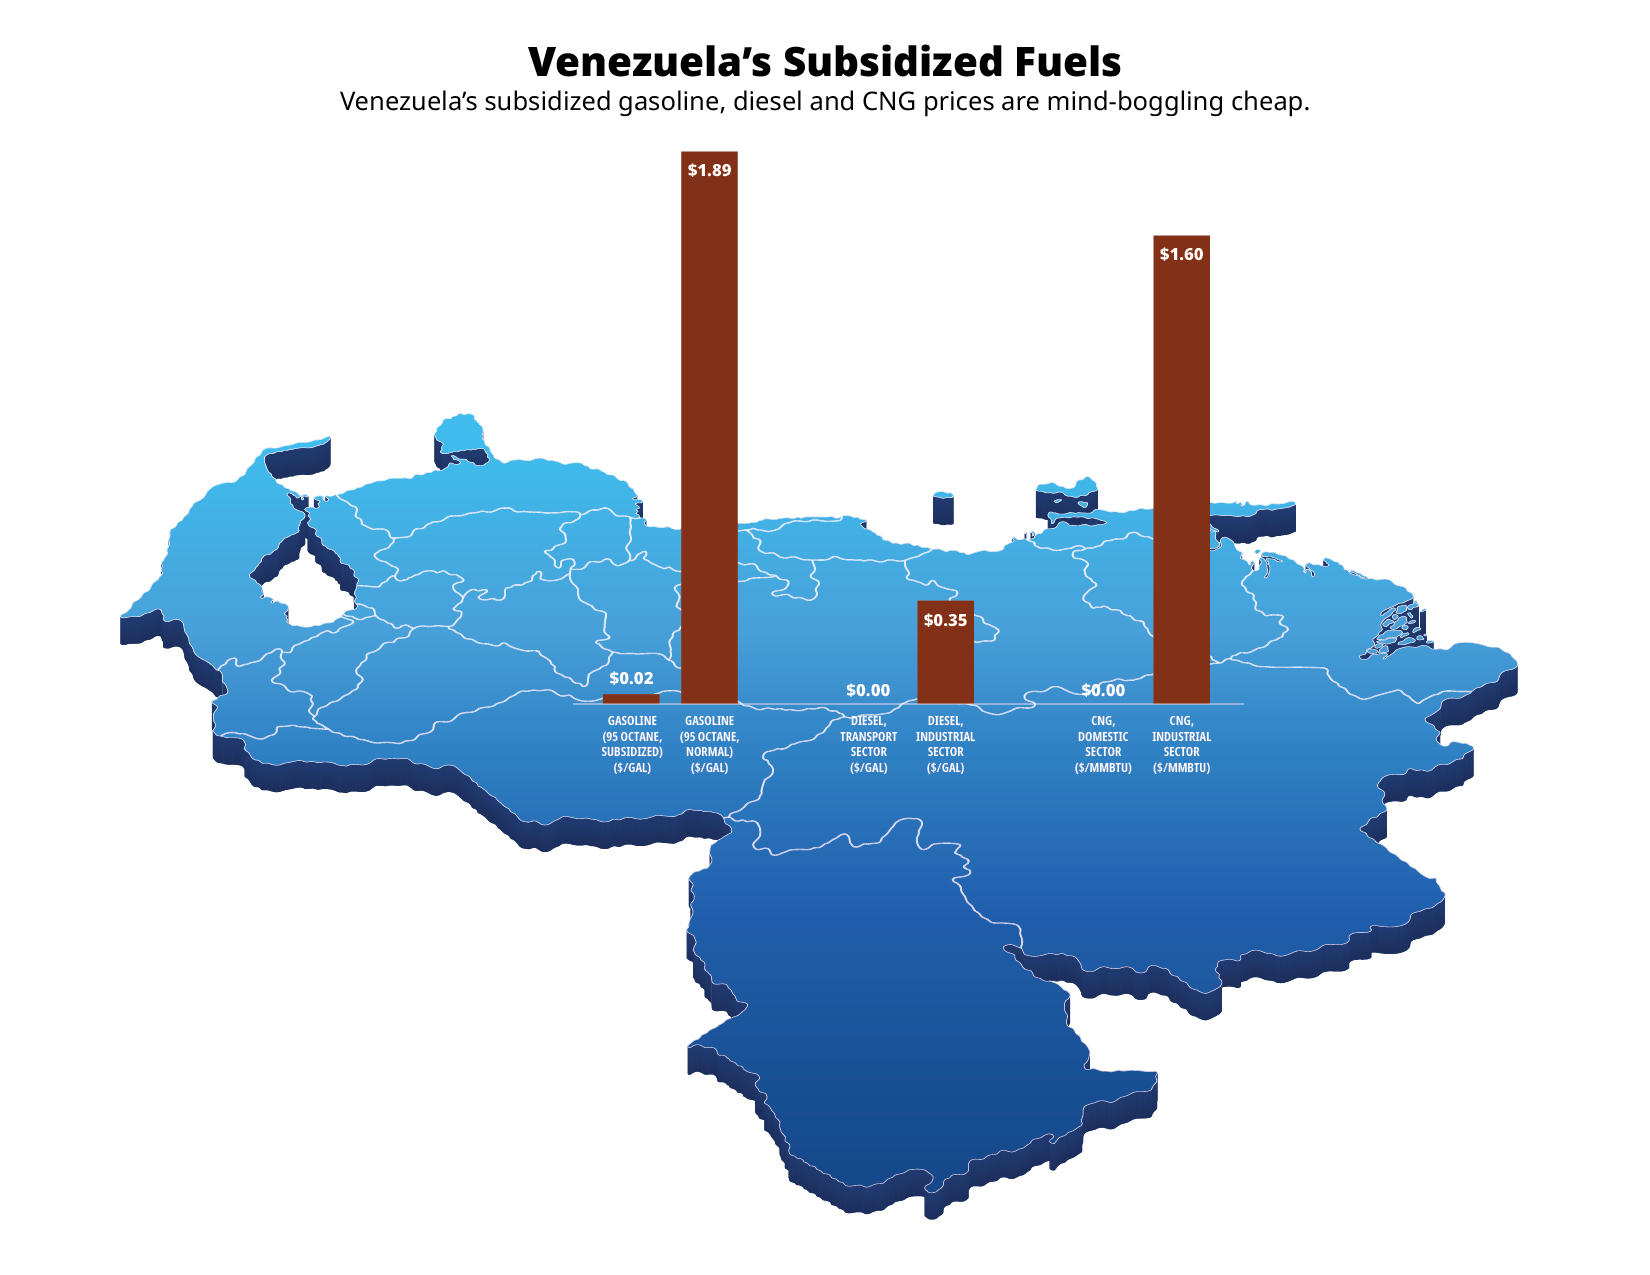 Venezuela subsidized fuels